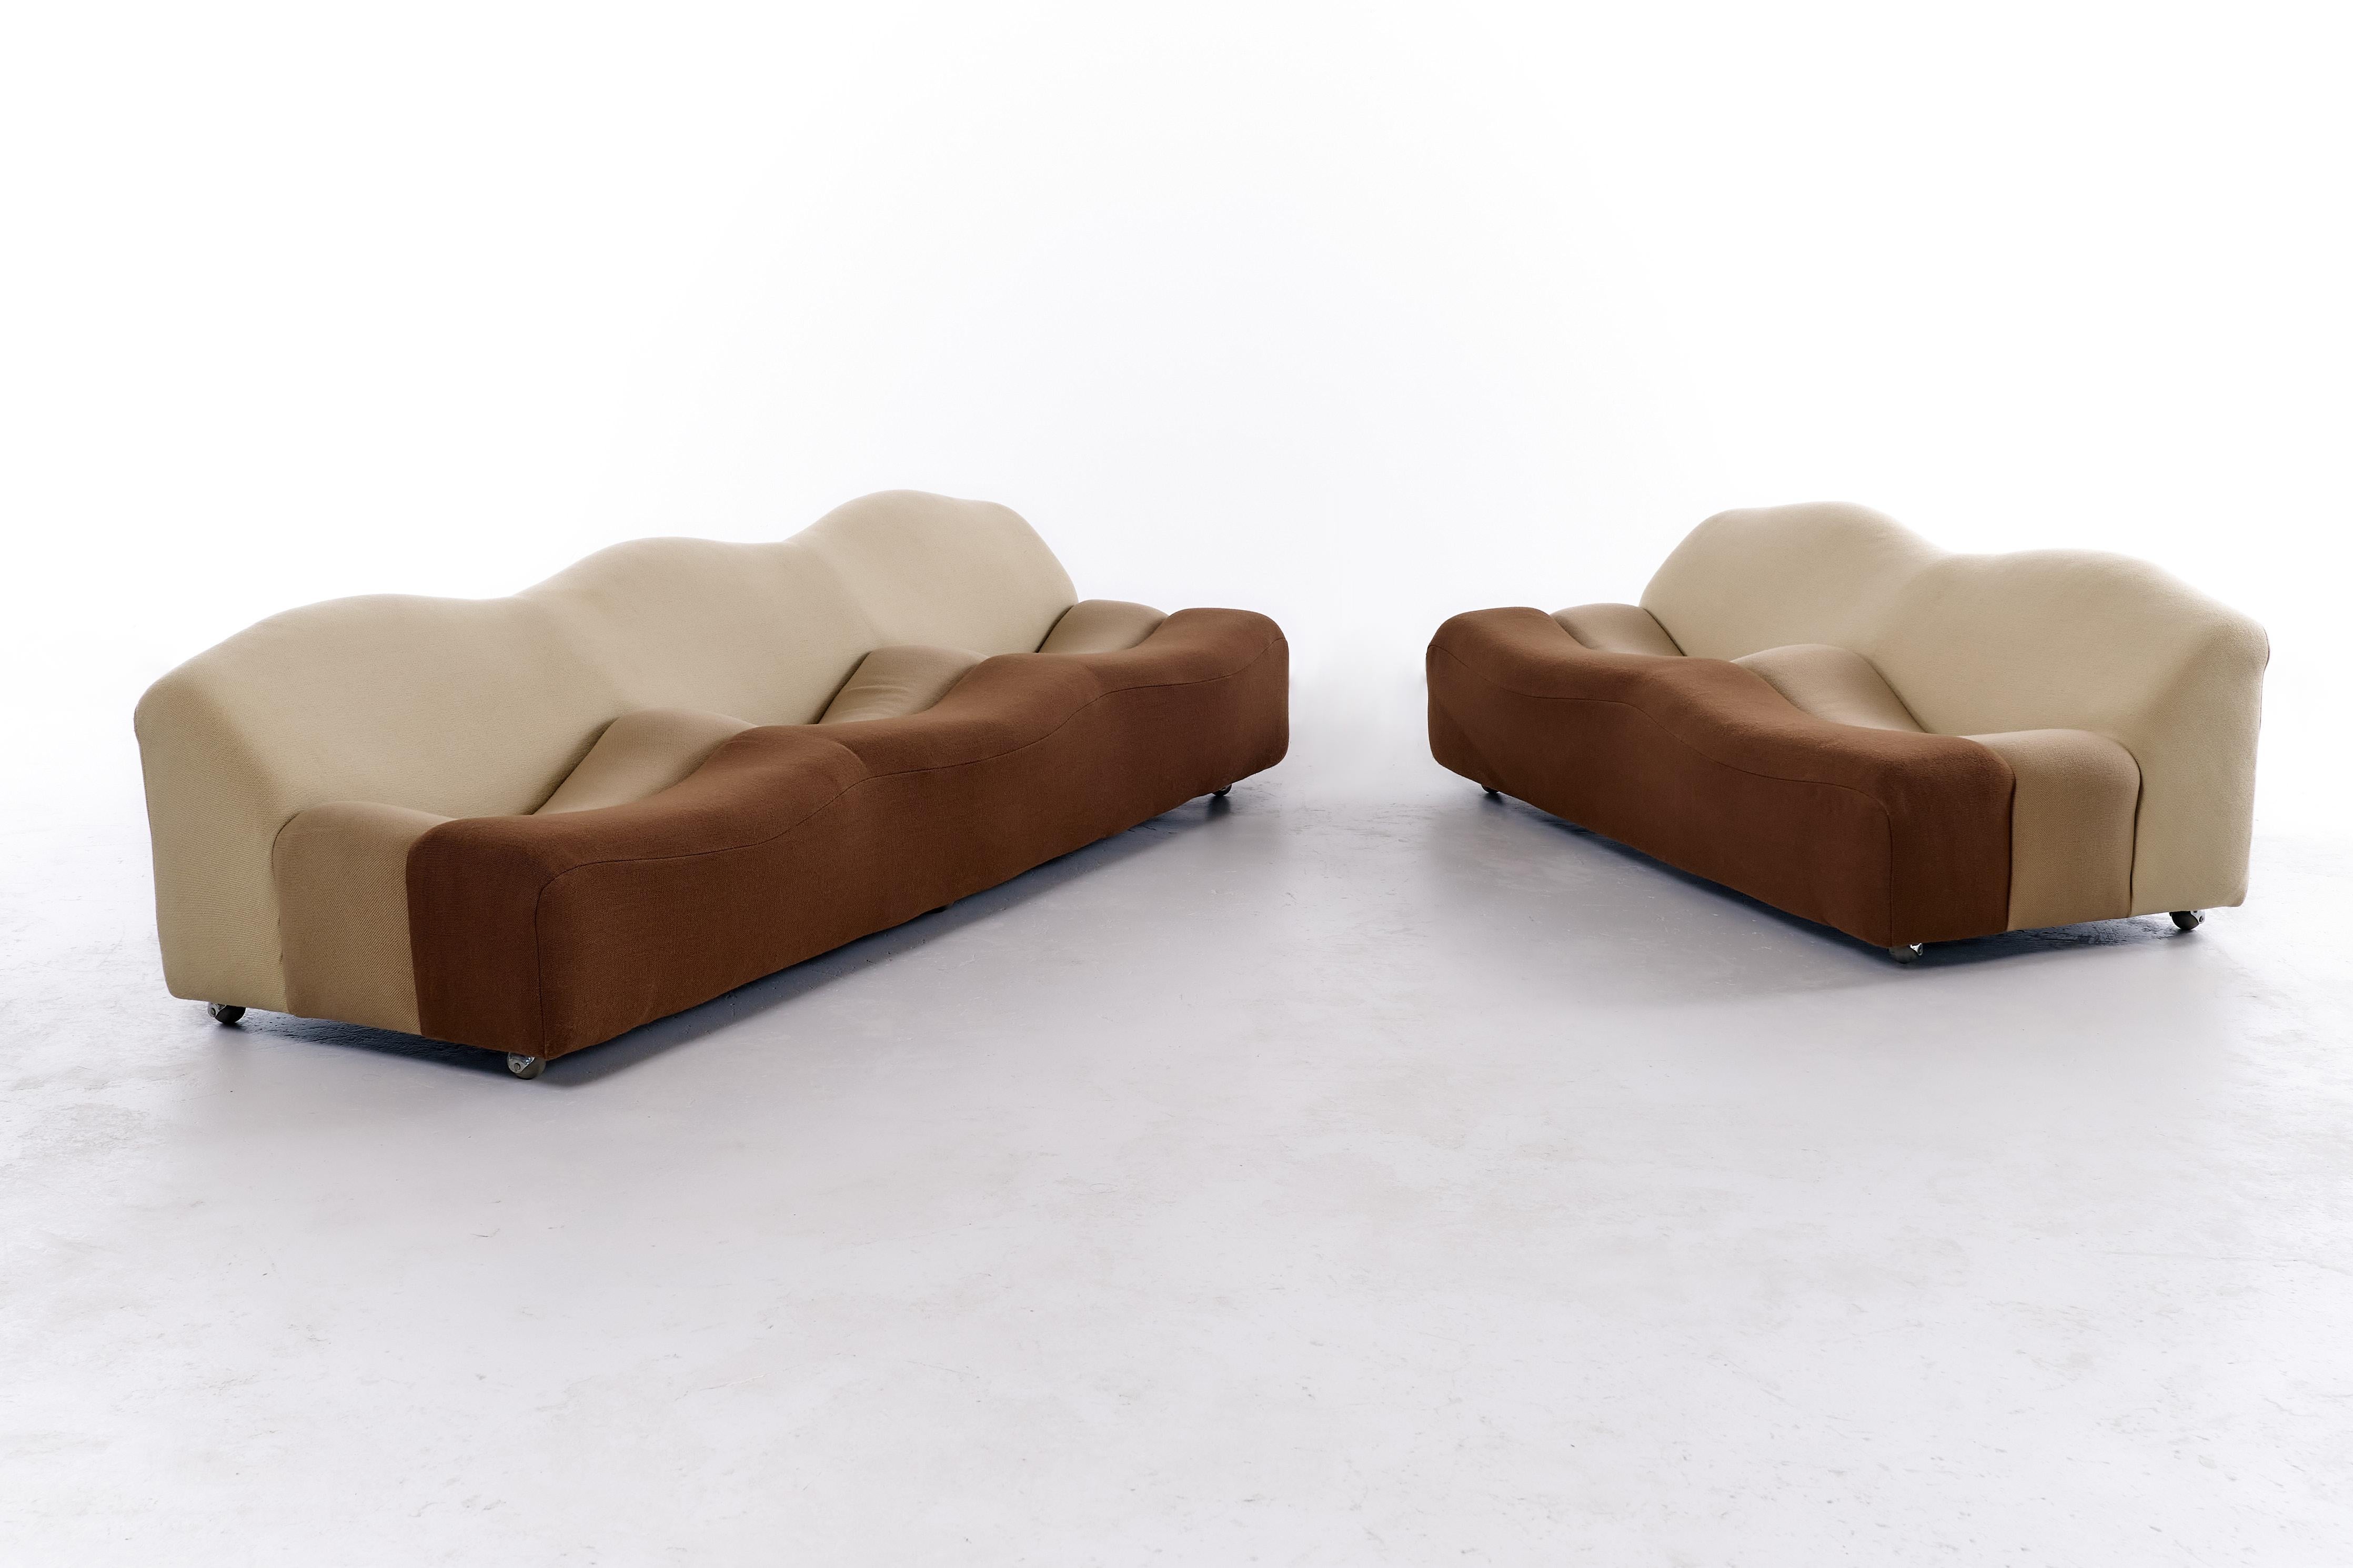 Das 1968 von Pierre Paulin entworfene ABCD-Sofa ist in der Tat ein bemerkenswertes Möbelstück, das seinen innovativen und zukunftsweisenden Designansatz verdeutlicht. Dieses Sofa ist unverwechselbar und zeichnet sich durch sein einzigartiges und